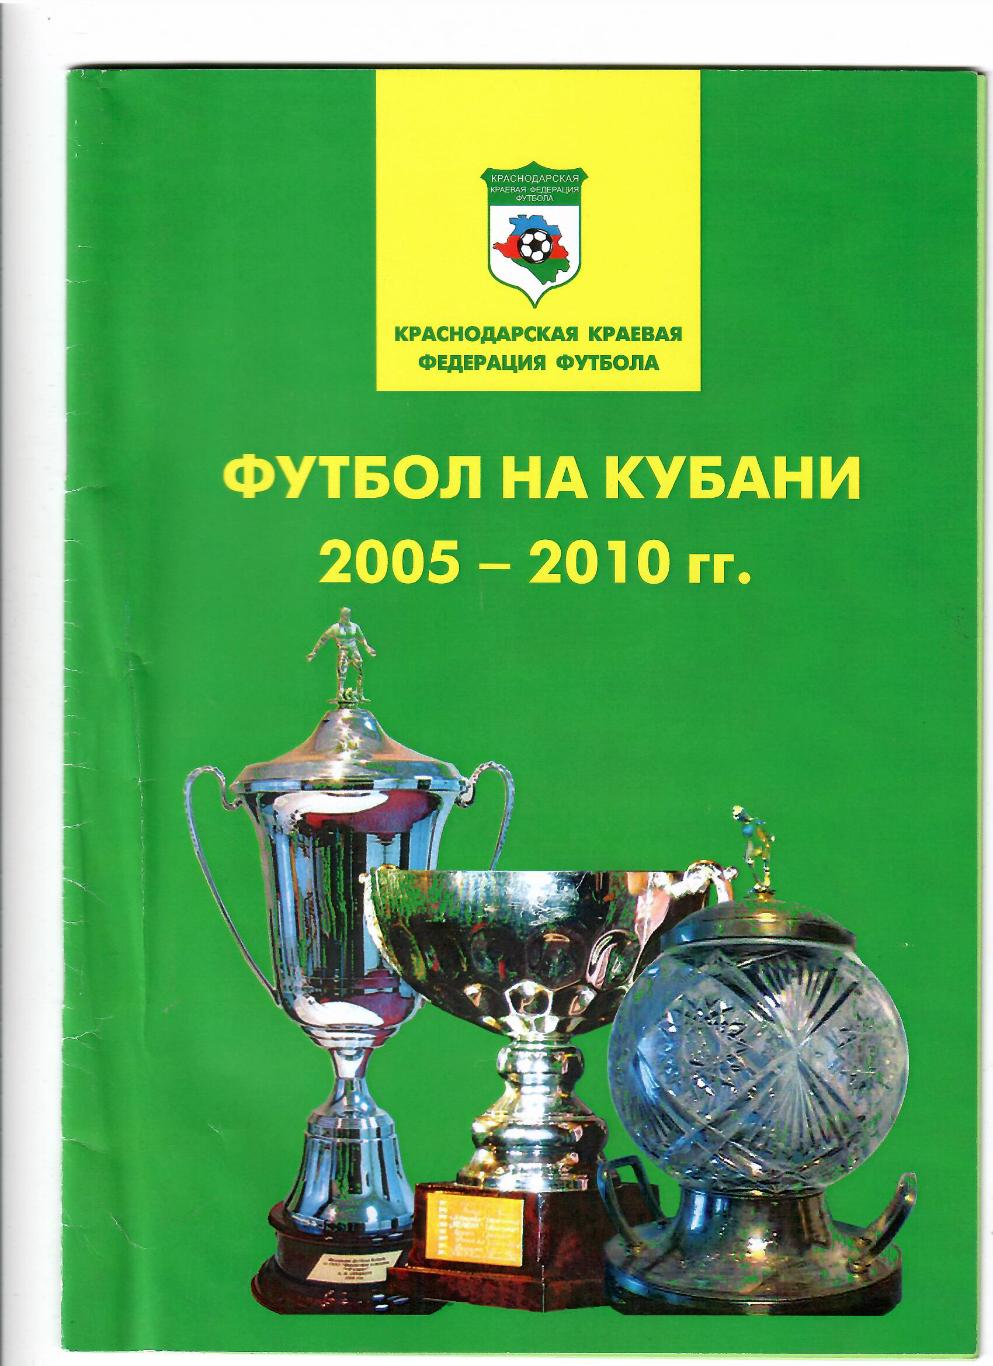 Краснодарская краевая федерация футбола.Футбол на Кубани 2005-2010